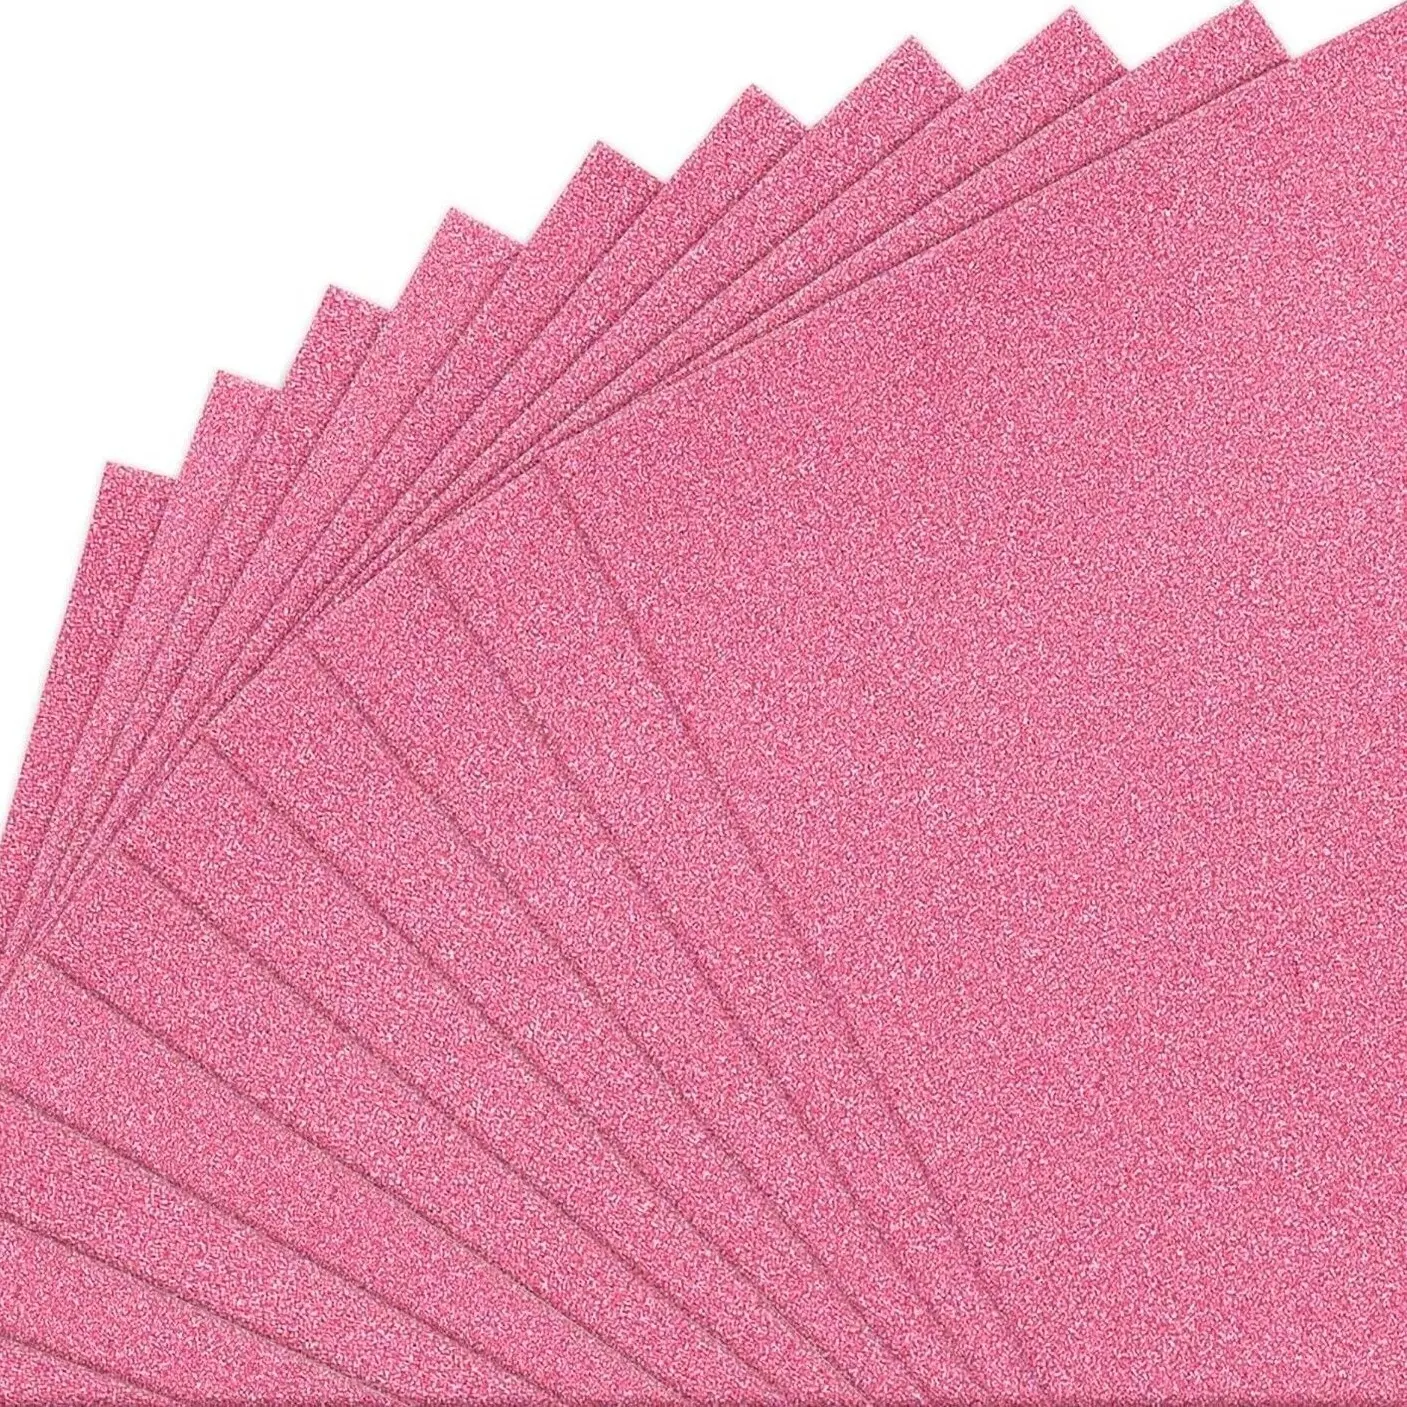 กระดาษการ์ด300gsm สีแวววาวระยิบระยับสำหรับงานฝีมือโครงการแบบ DIY การทำบัตรและกระดาษแข็ง